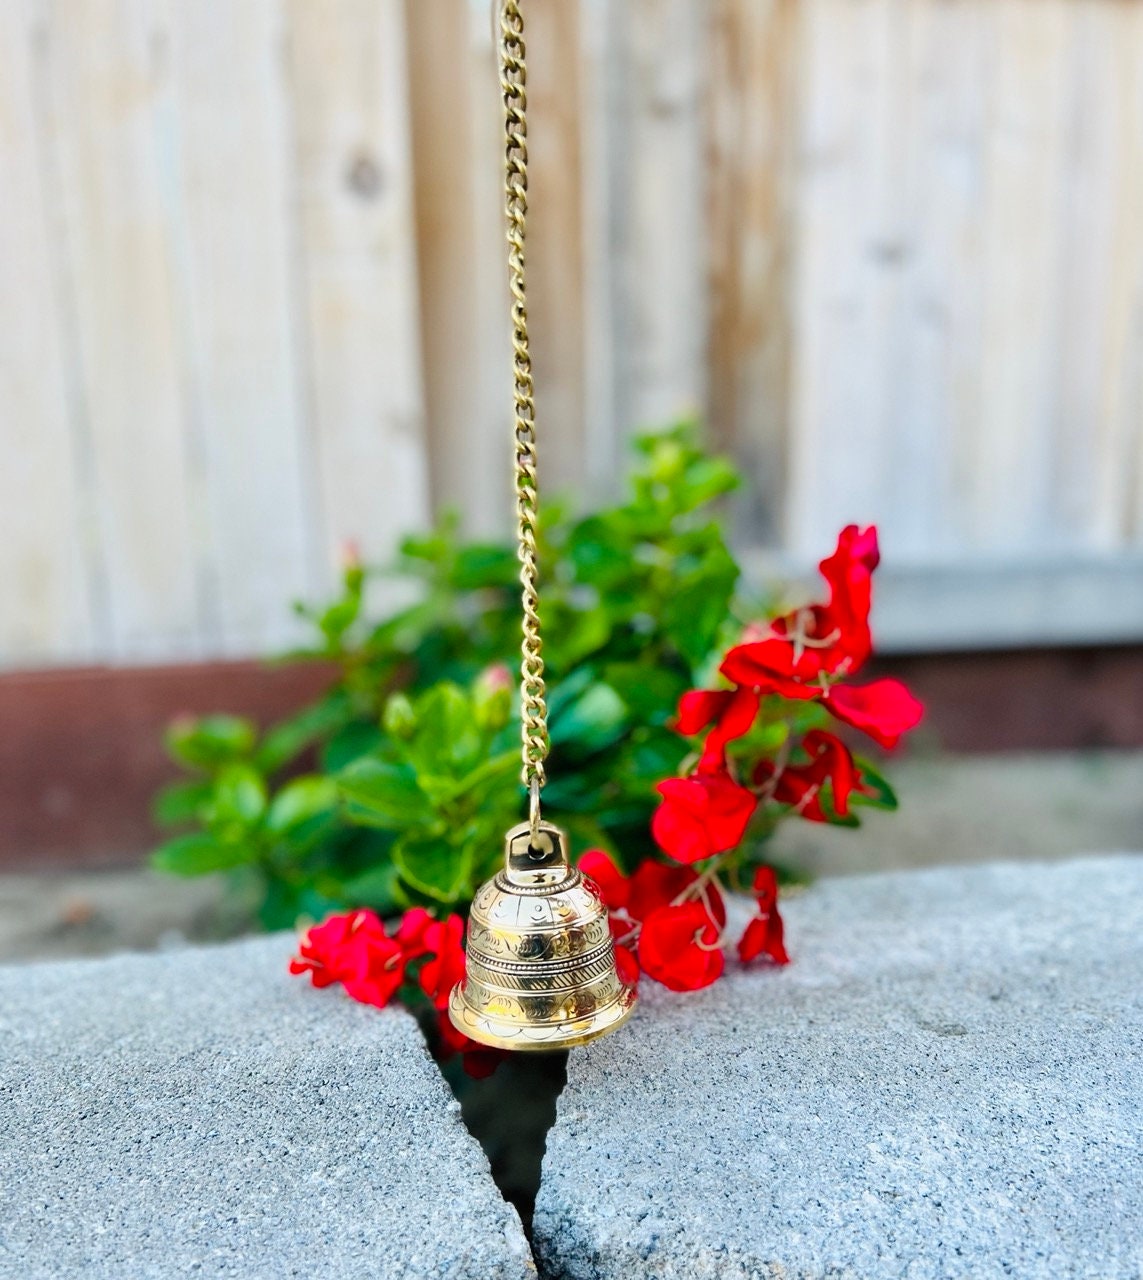 Metal Hanging 5 Solid Brass Bell Outdoor Indoor Sound Bell Unique